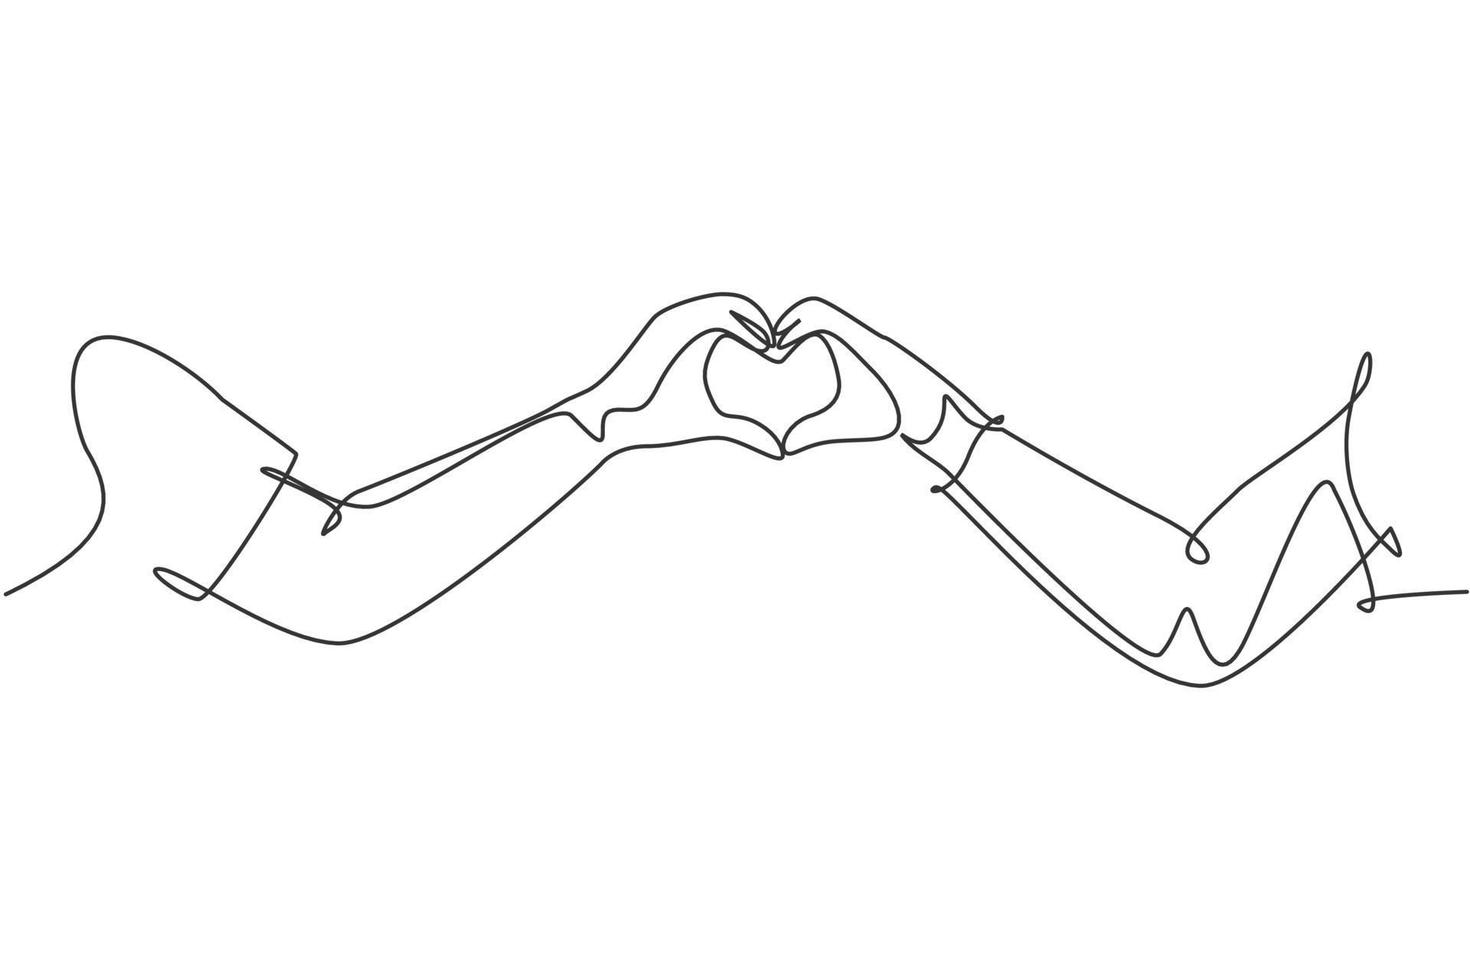 dessin au trait continu unique de mignon jeune couple heureux formé en forme de coeur avec leurs mains comme symbole d'amour. Concept de mariage d'amour romantique une ligne graphique dessiner illustration vectorielle vecteur